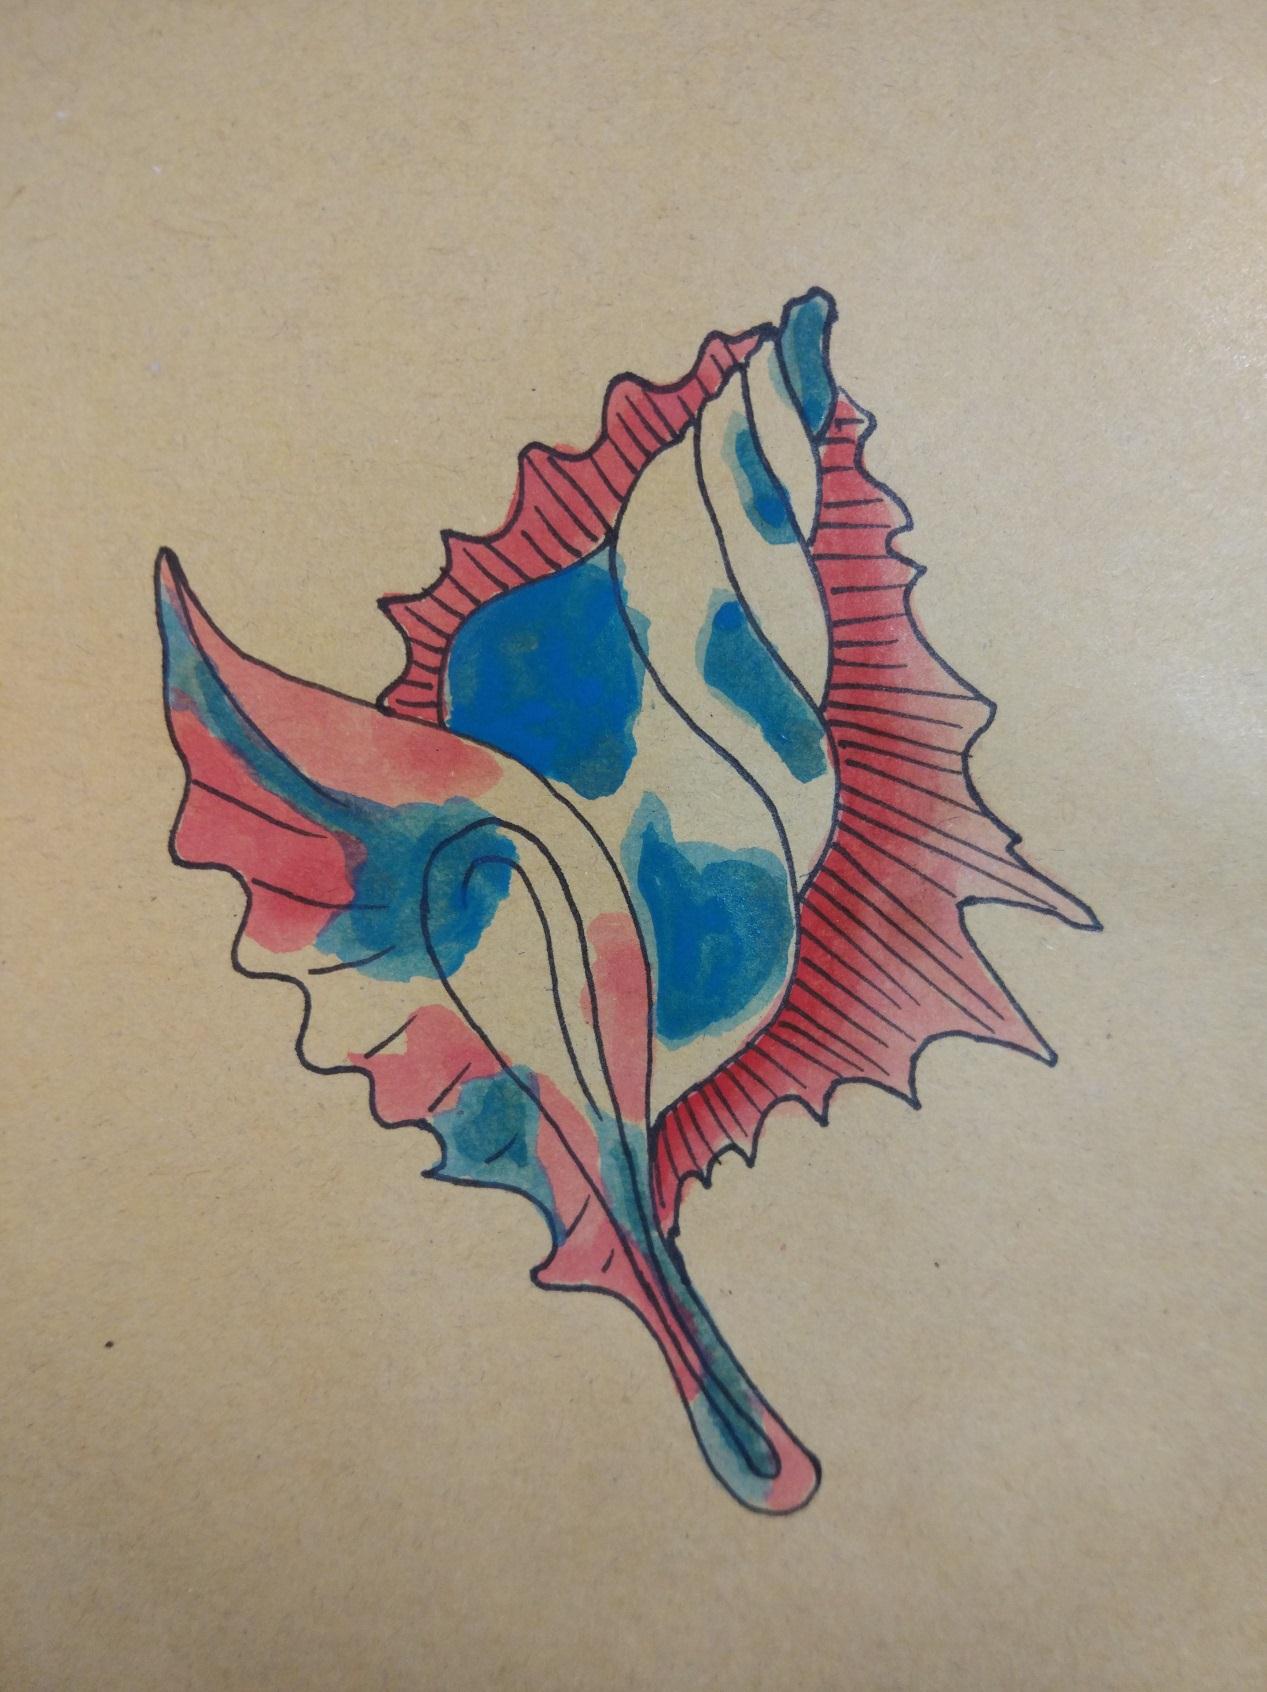 趣味创意手工DIY彩绘画作品之可爱彩色的螺